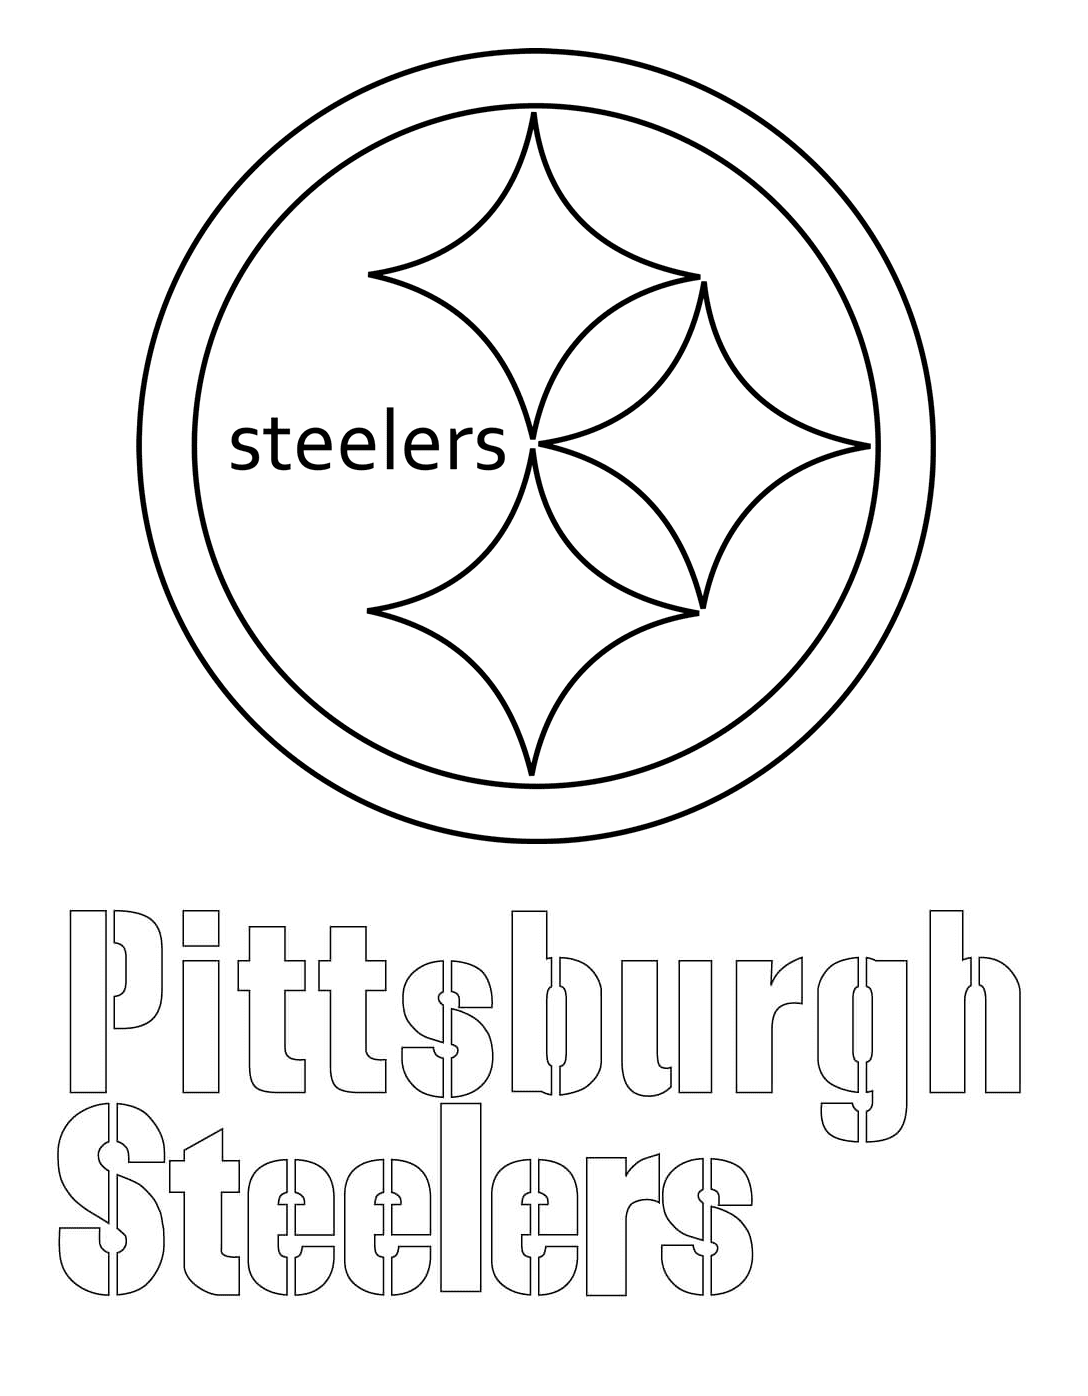 Logotipo de los Pittsburgh Steelers de la NFL